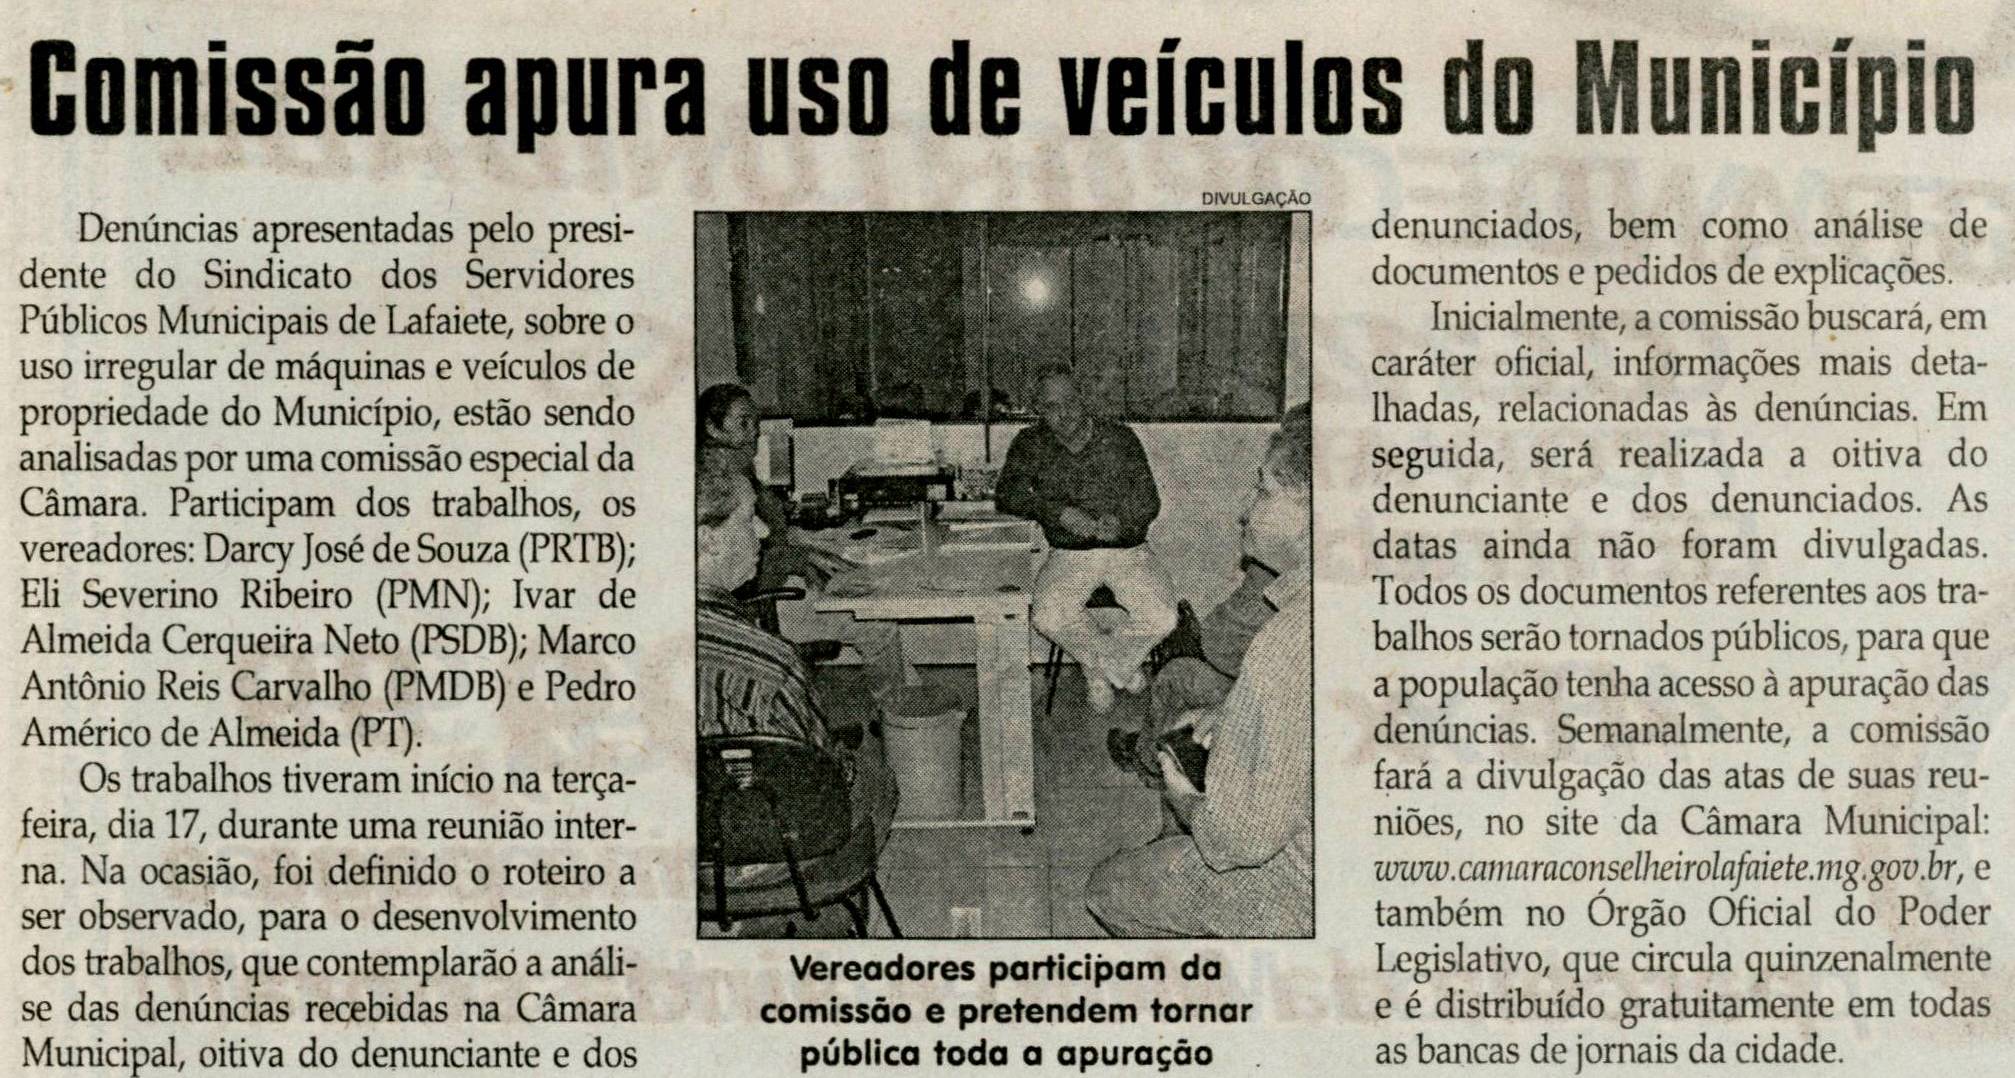 Comissão apura uso de veículos do Município. Jornal Correio da Cidade, Conselheiro Lafaiete, 21 mai.  2011, p. 04.